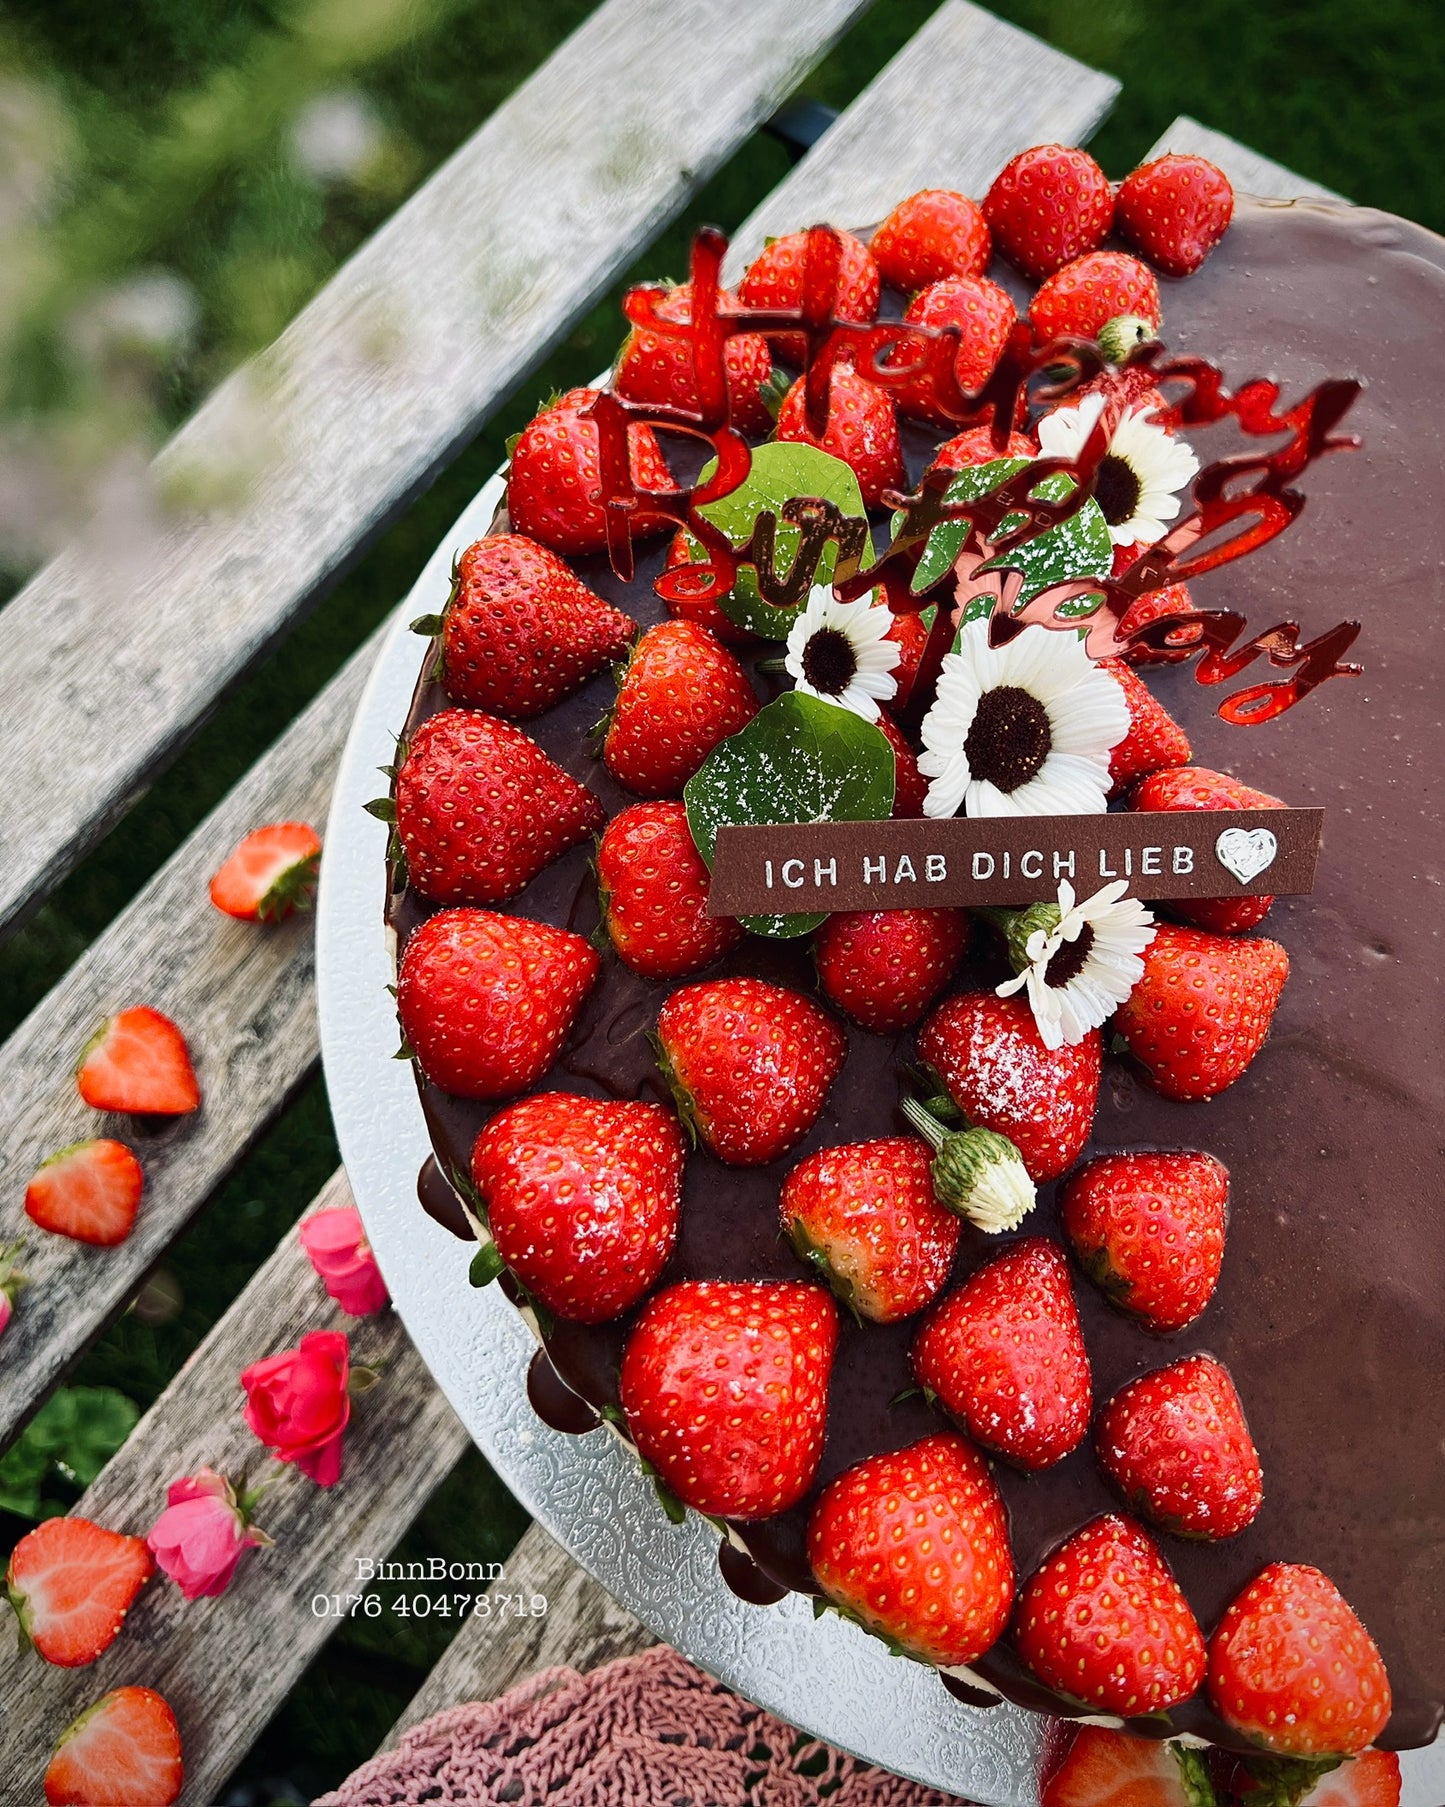 9. Torte "I Love You" mit Schokoladen und frischen Erdbeeren 26 cm